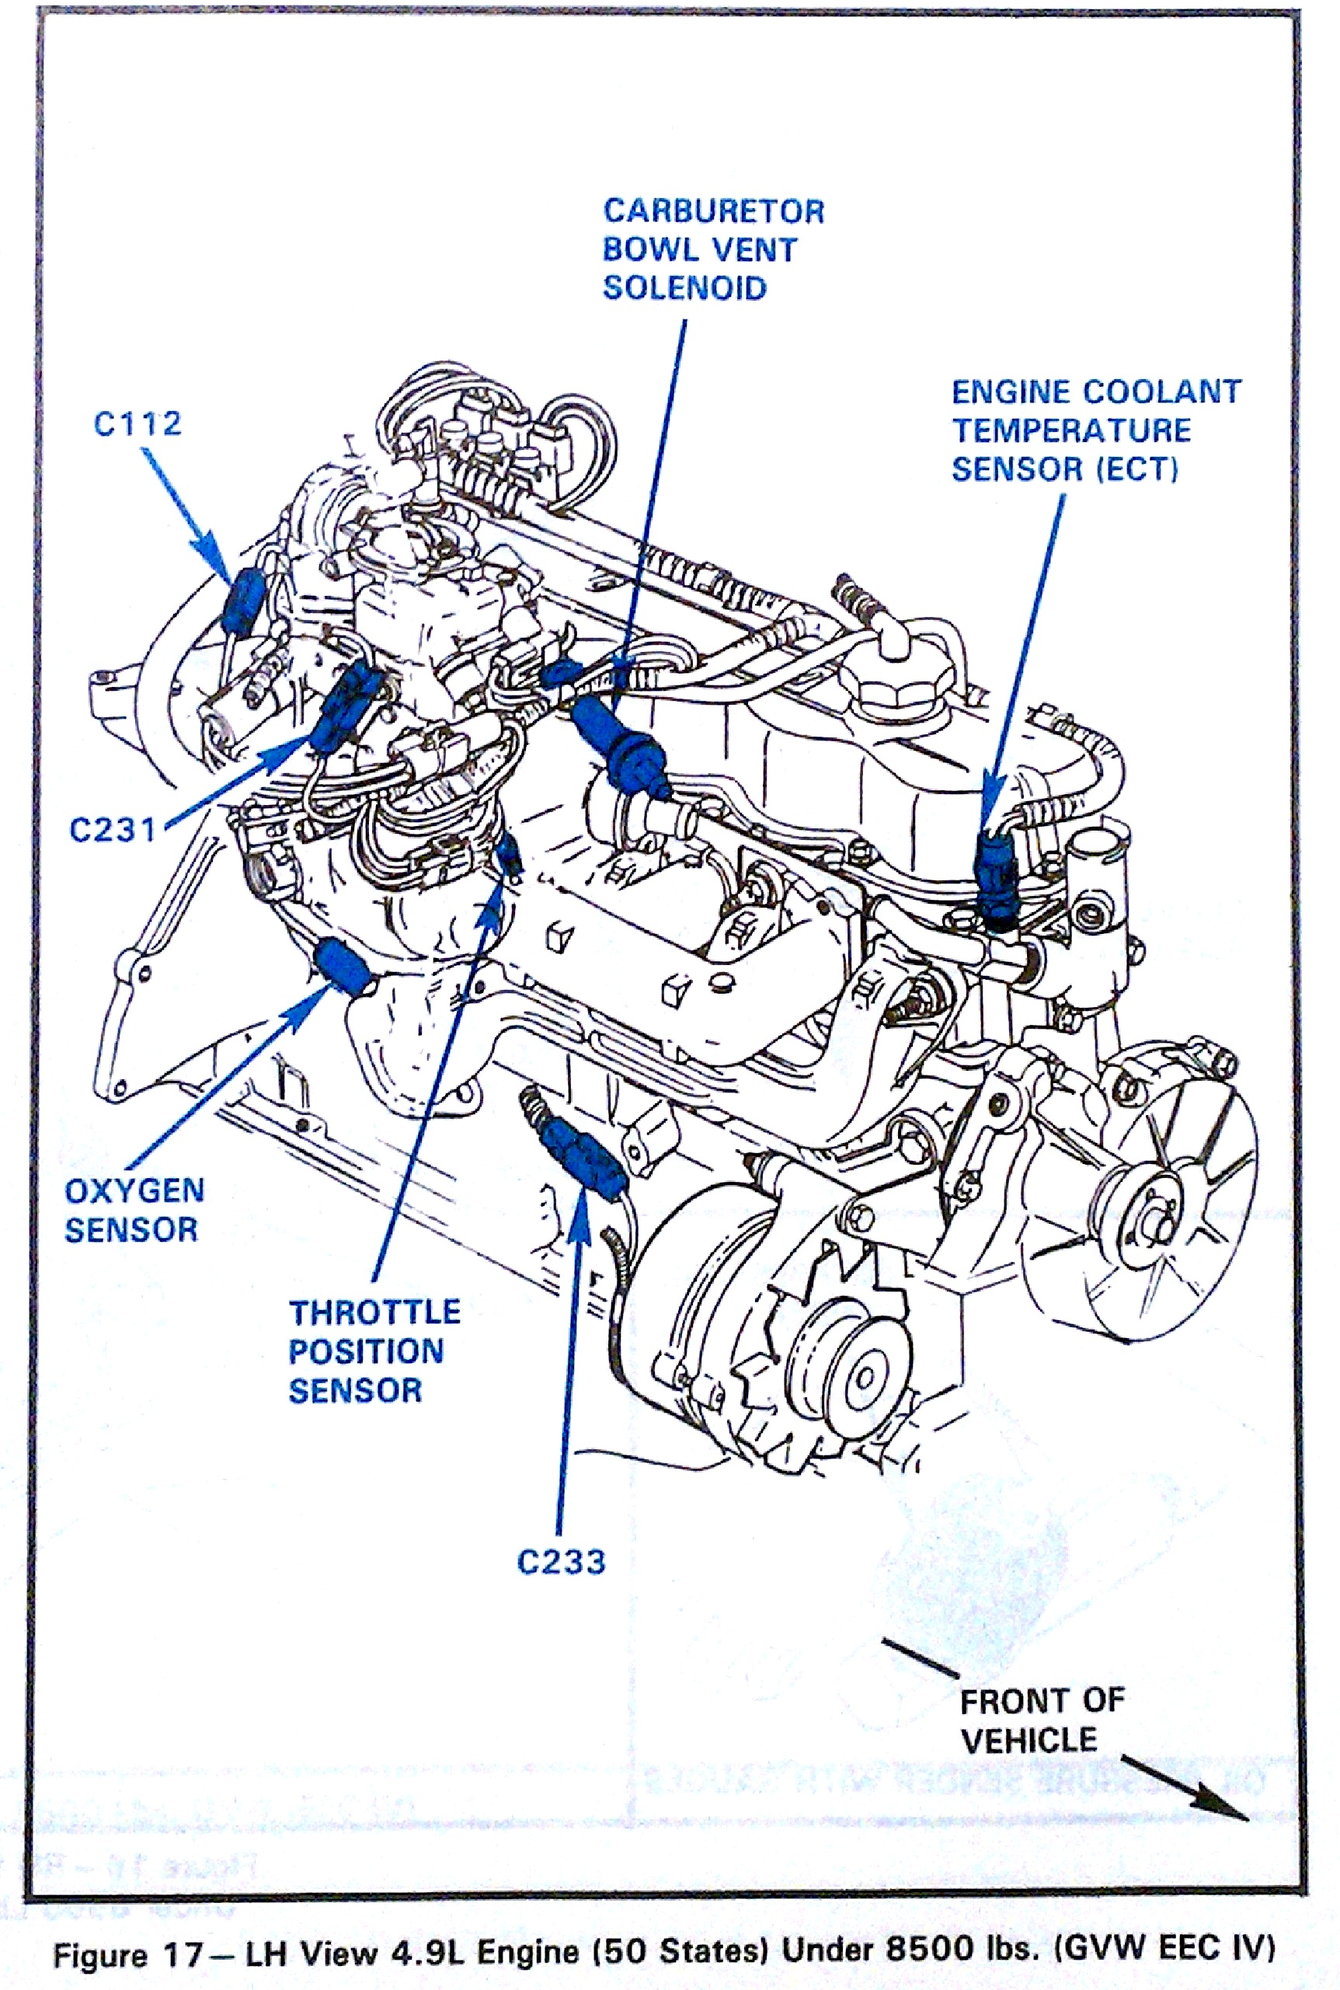 Awesome 1986 Ford F350 Wiring Diagram Myprocessdiagram Com